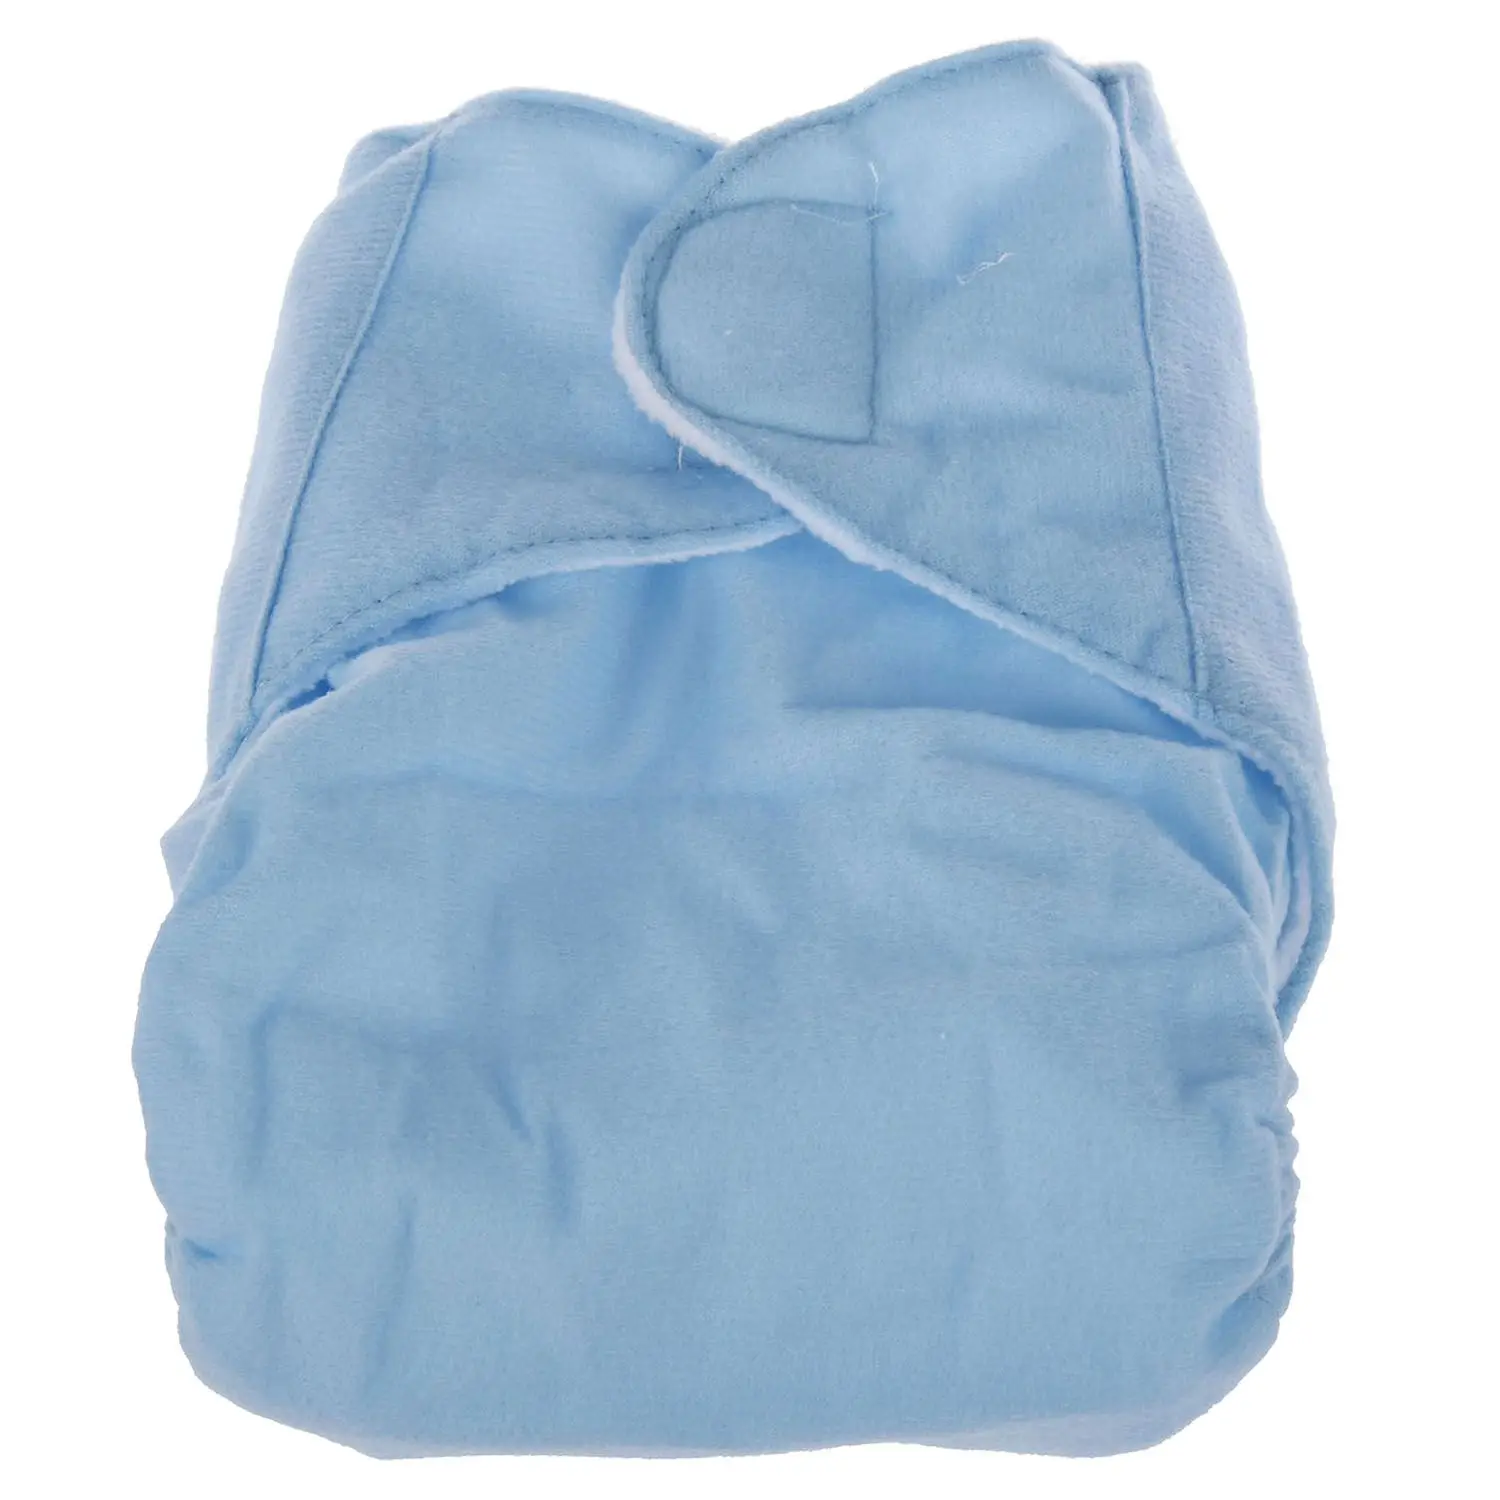 QianQuHui, 1 шт., многоразовые детские подгузники для младенцев, моющиеся подгузники, мягкие чехлы, тренировочные штаны, регулируемые, синие, волшебные, липкие, зимние